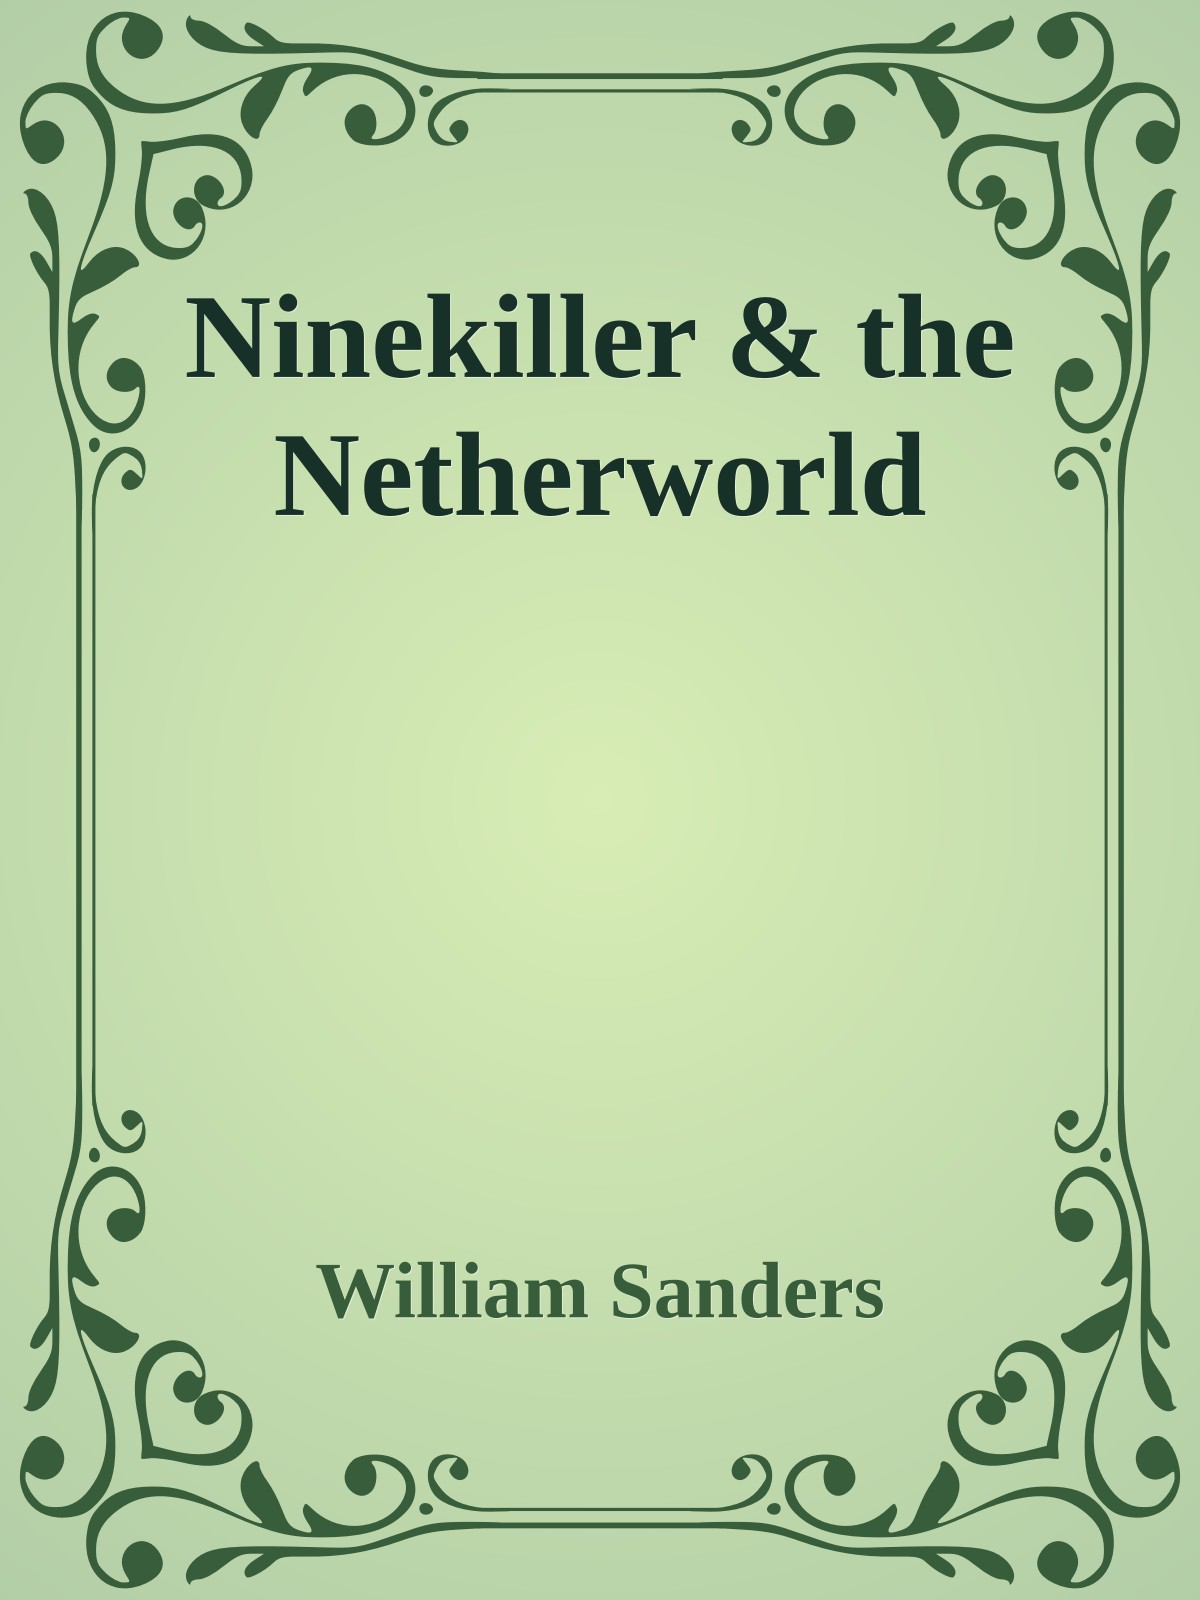 Ninekiller & the Netherworld